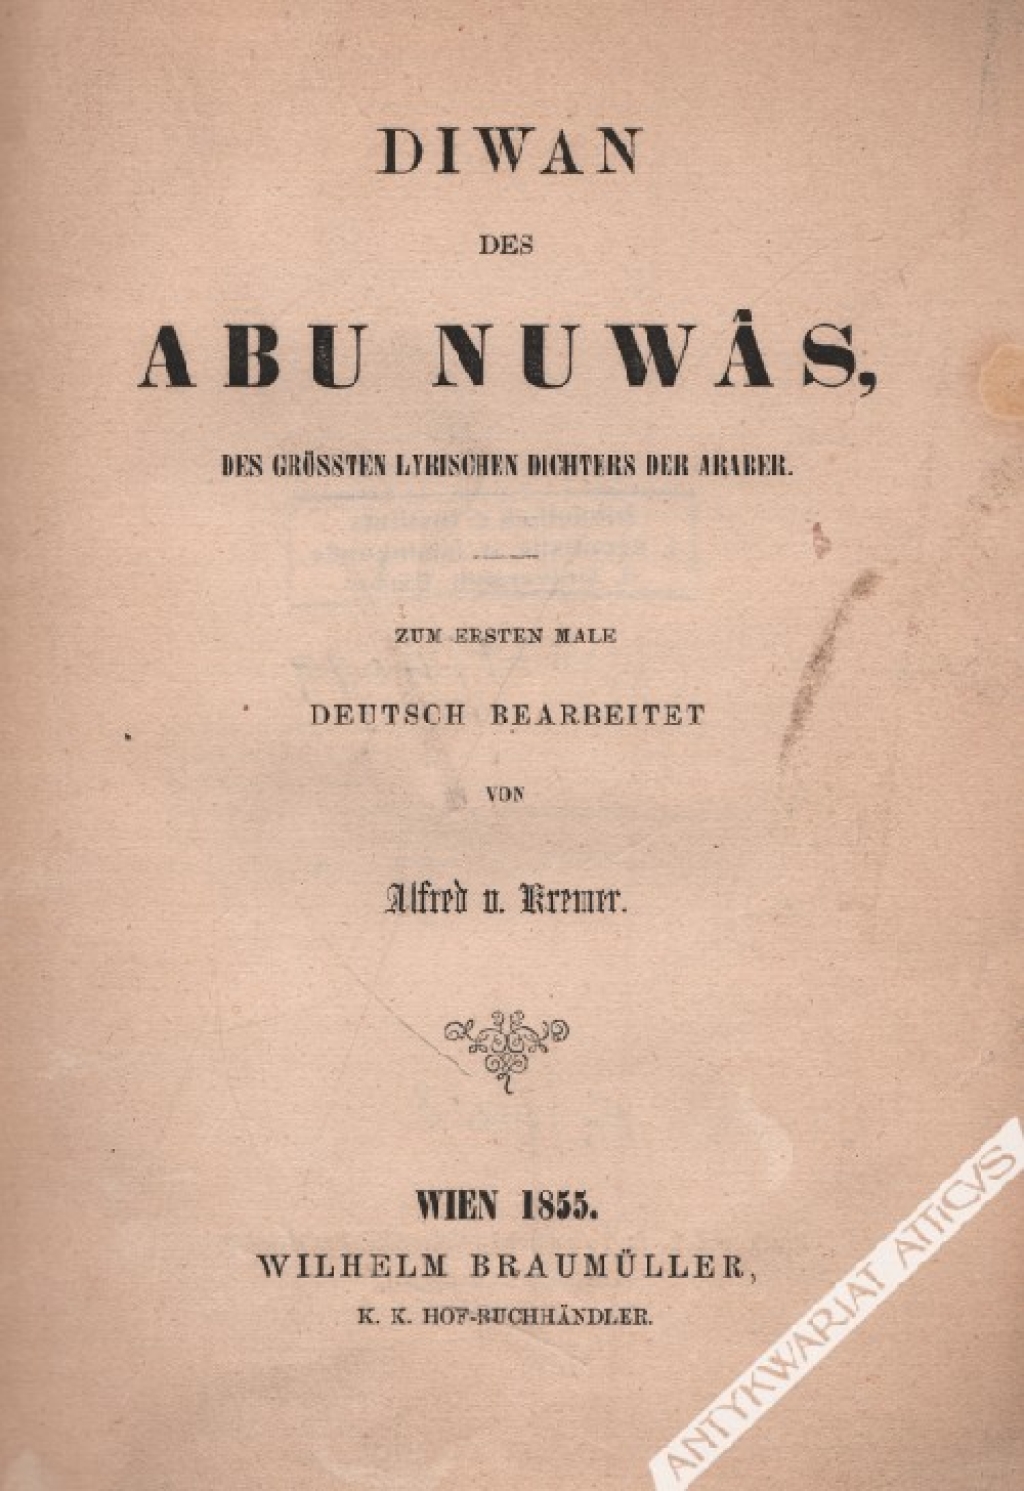 Diwan des Abu Nuwas. Des grossten Lyrischen Dichters der Araber